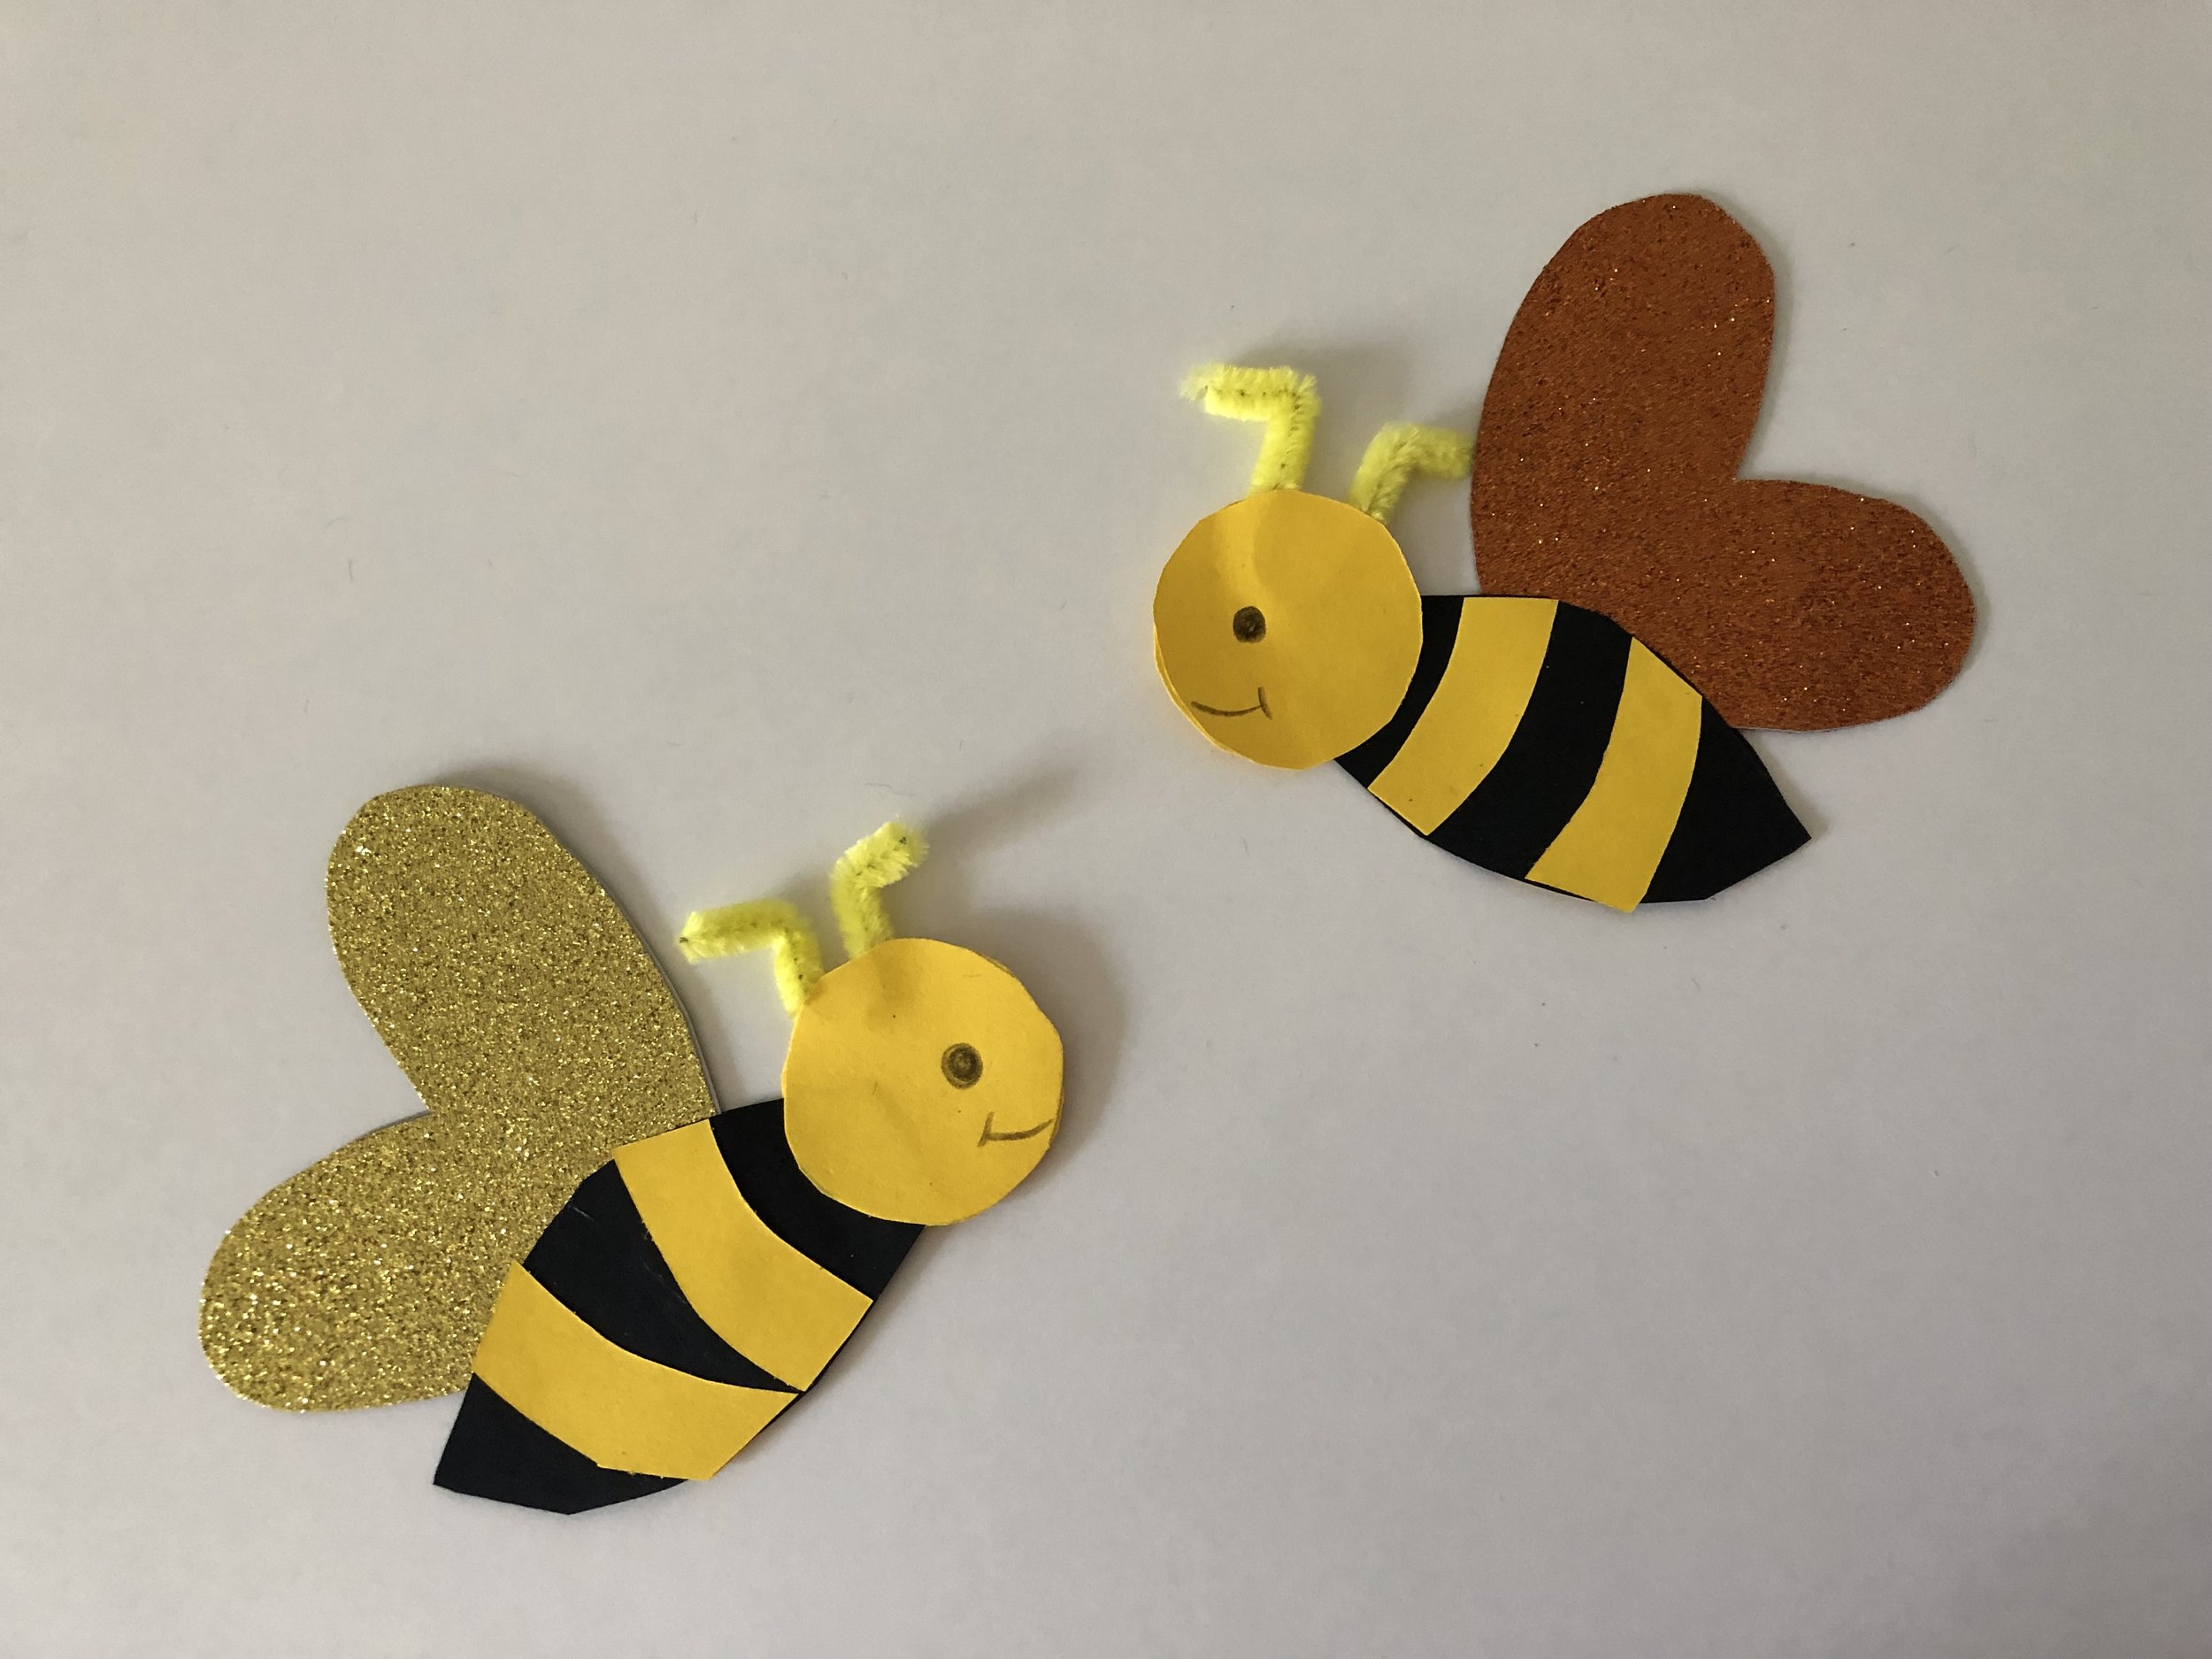 Die Biene: Basteln kleiner fliegender Bienchen 🐝 — Grundschule und Basteln